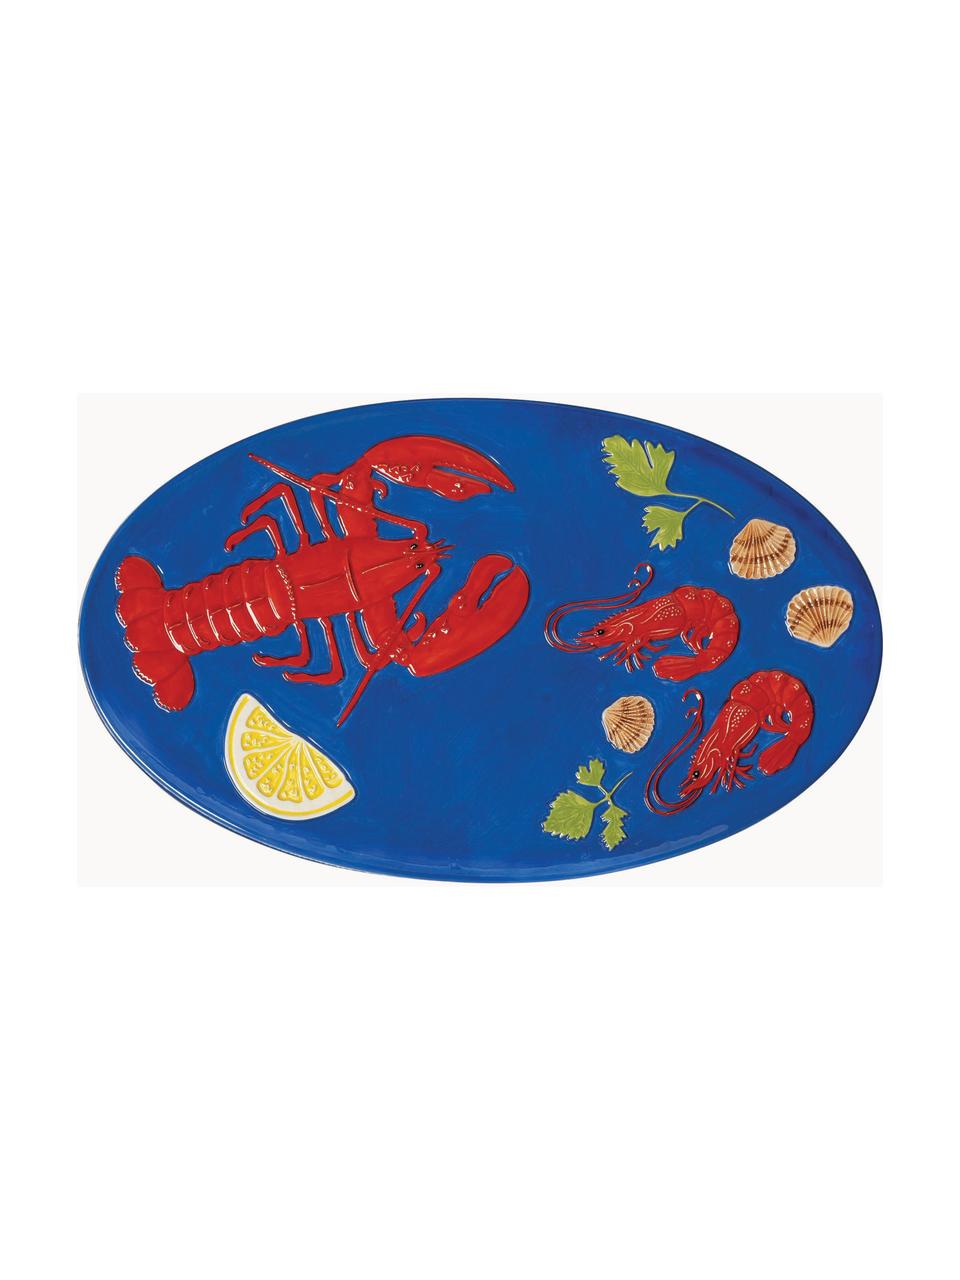 Ručně malovaný servírovací talíř z dolomitu De La Mert, Dolomit, glazovaný, Tmavě modrá, červená, zelená, žlutá, Š 33 cm, H 20 cm